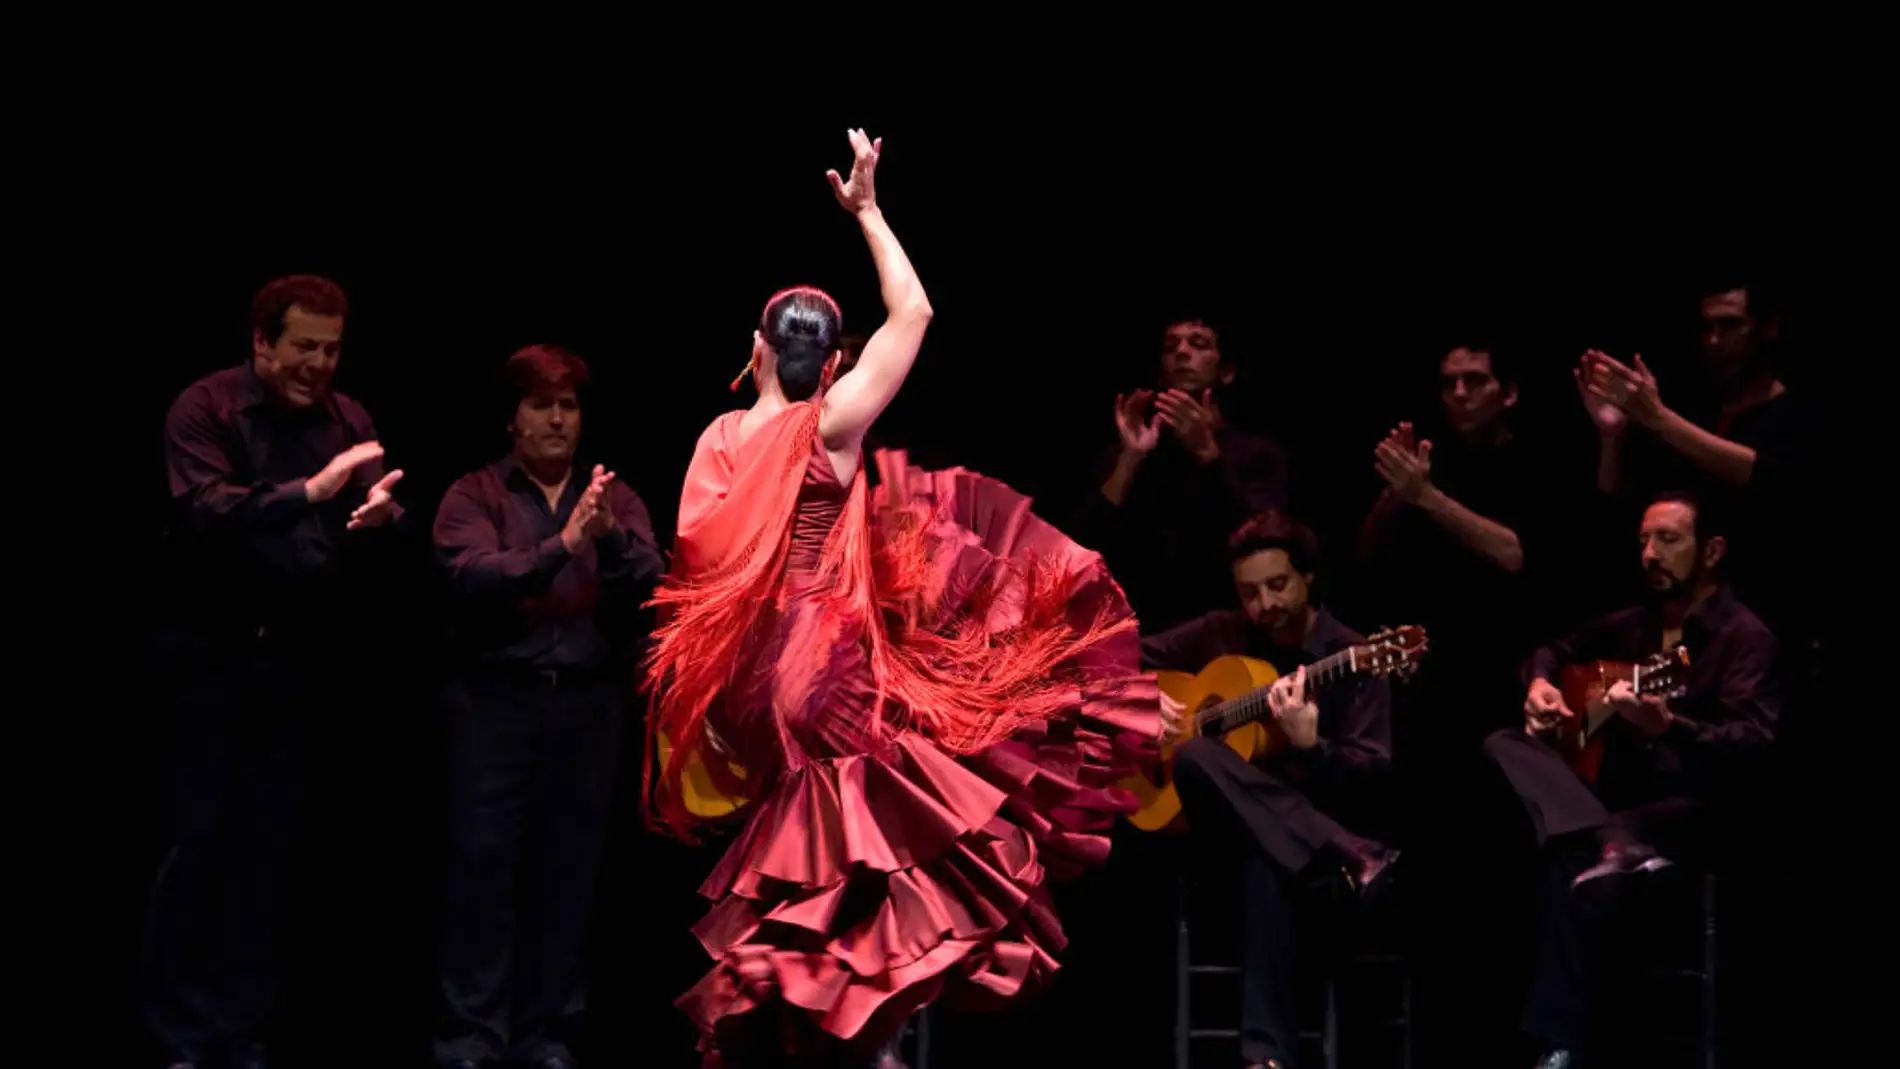 Imagen de archivo de una bailaora de flamenco